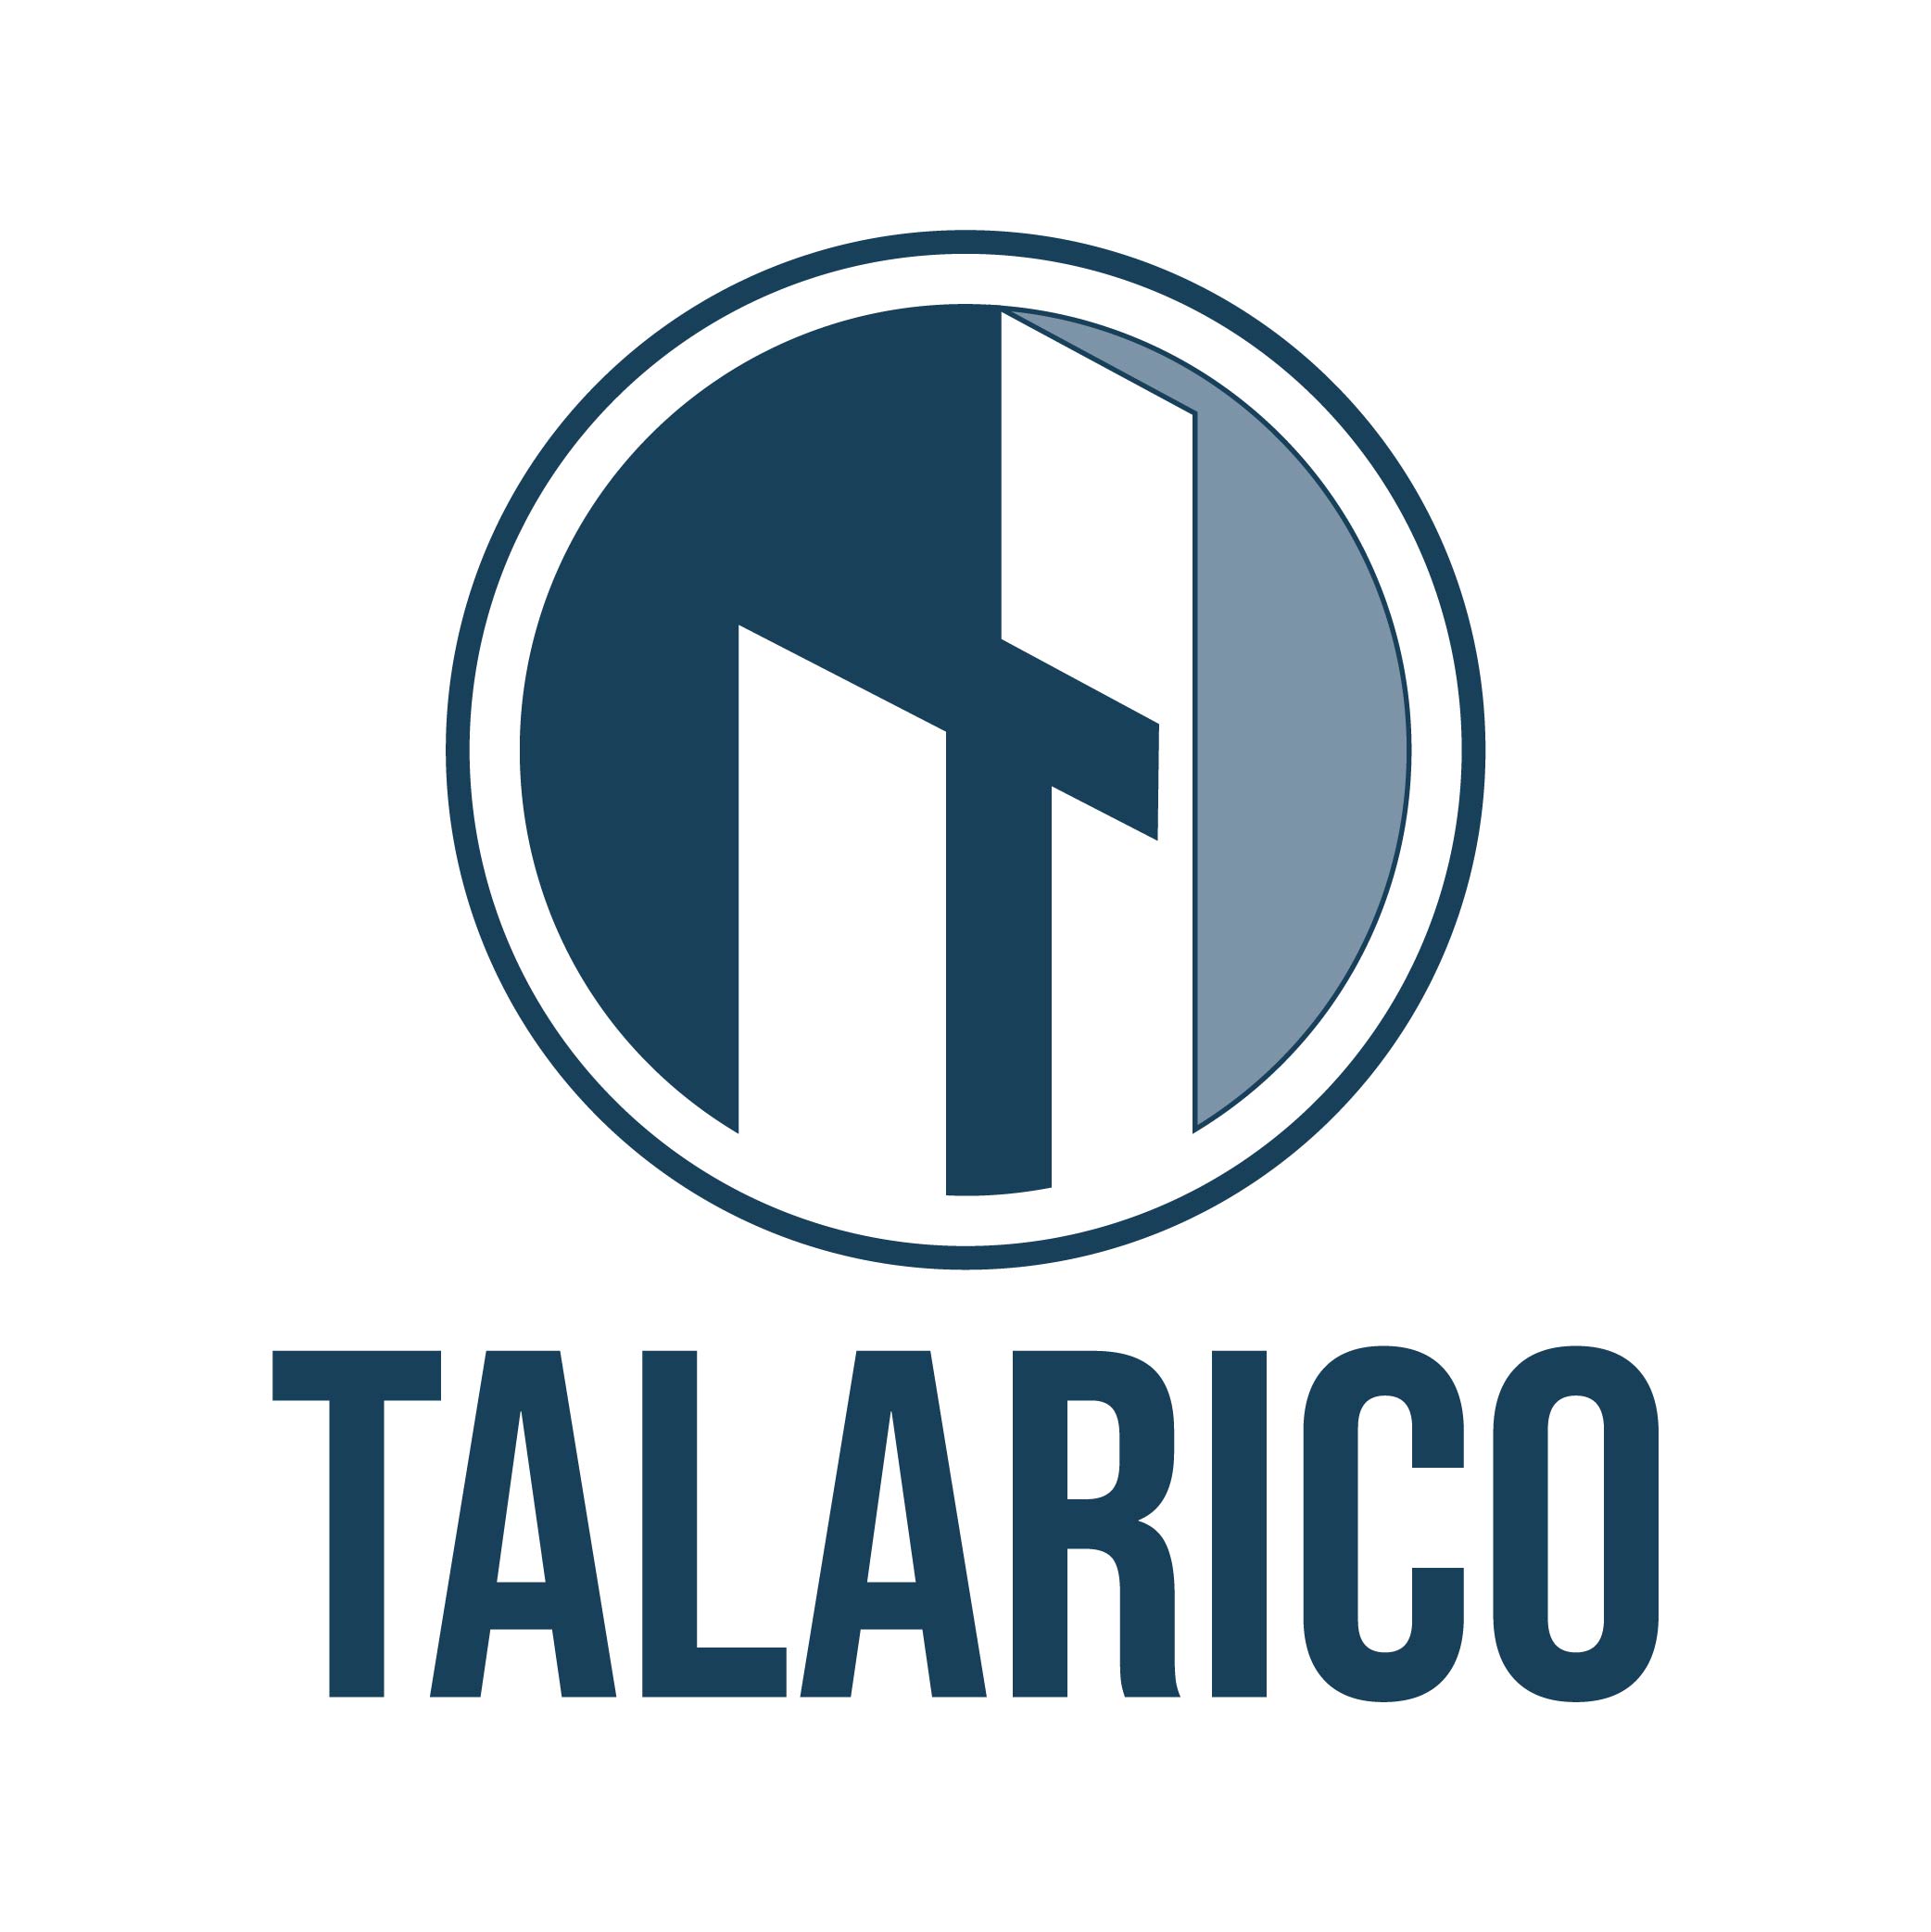 The Talarico Company